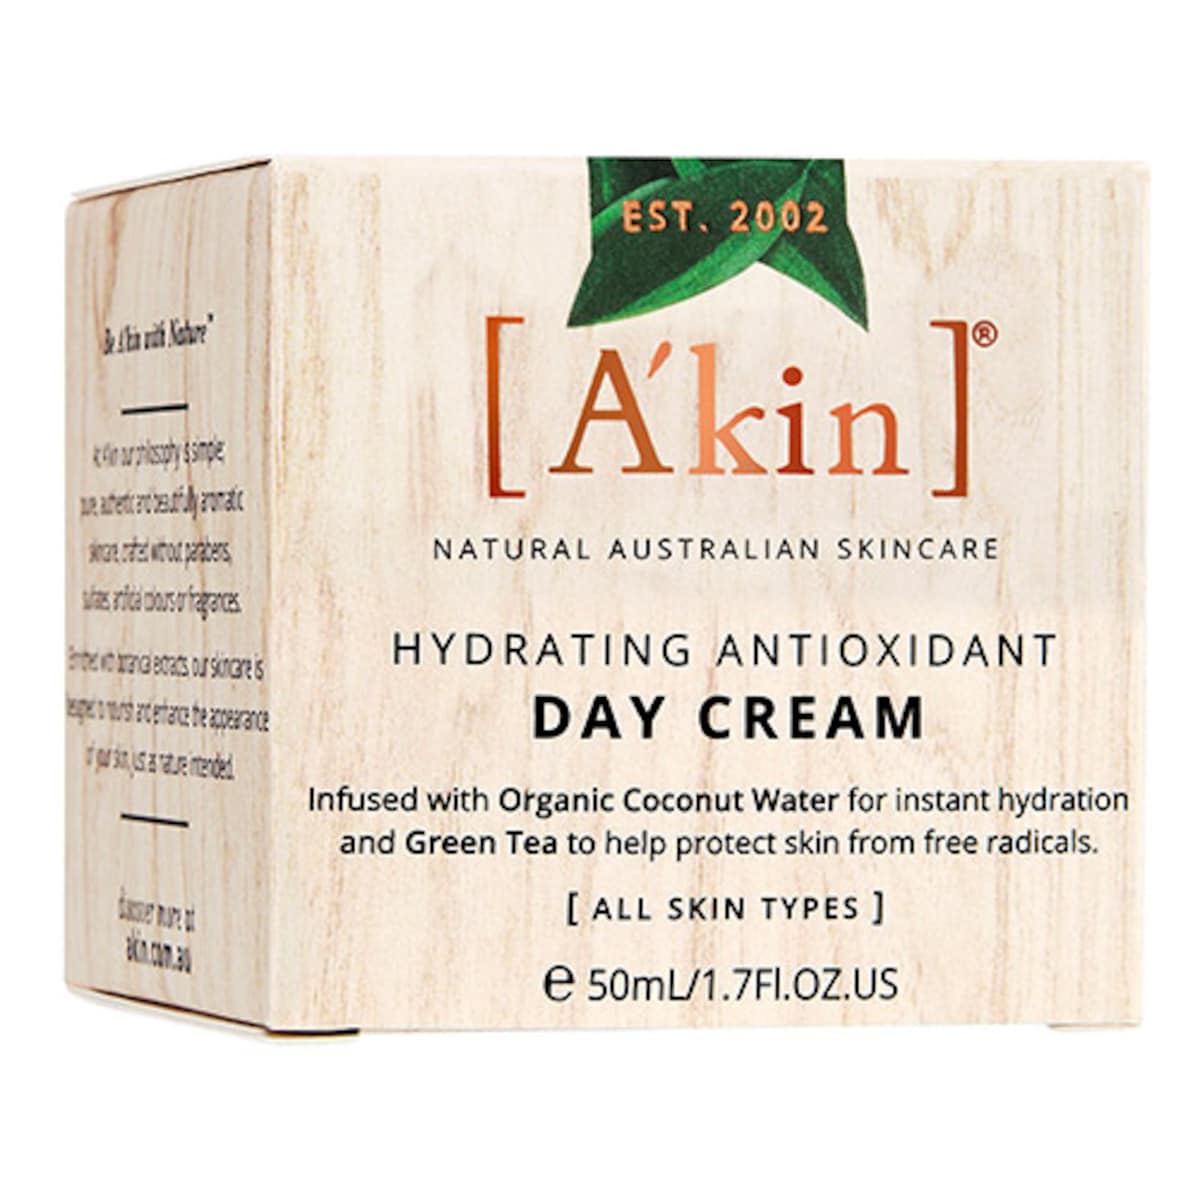 Akin Hydrating Antioxidant Day Cream 50Ml